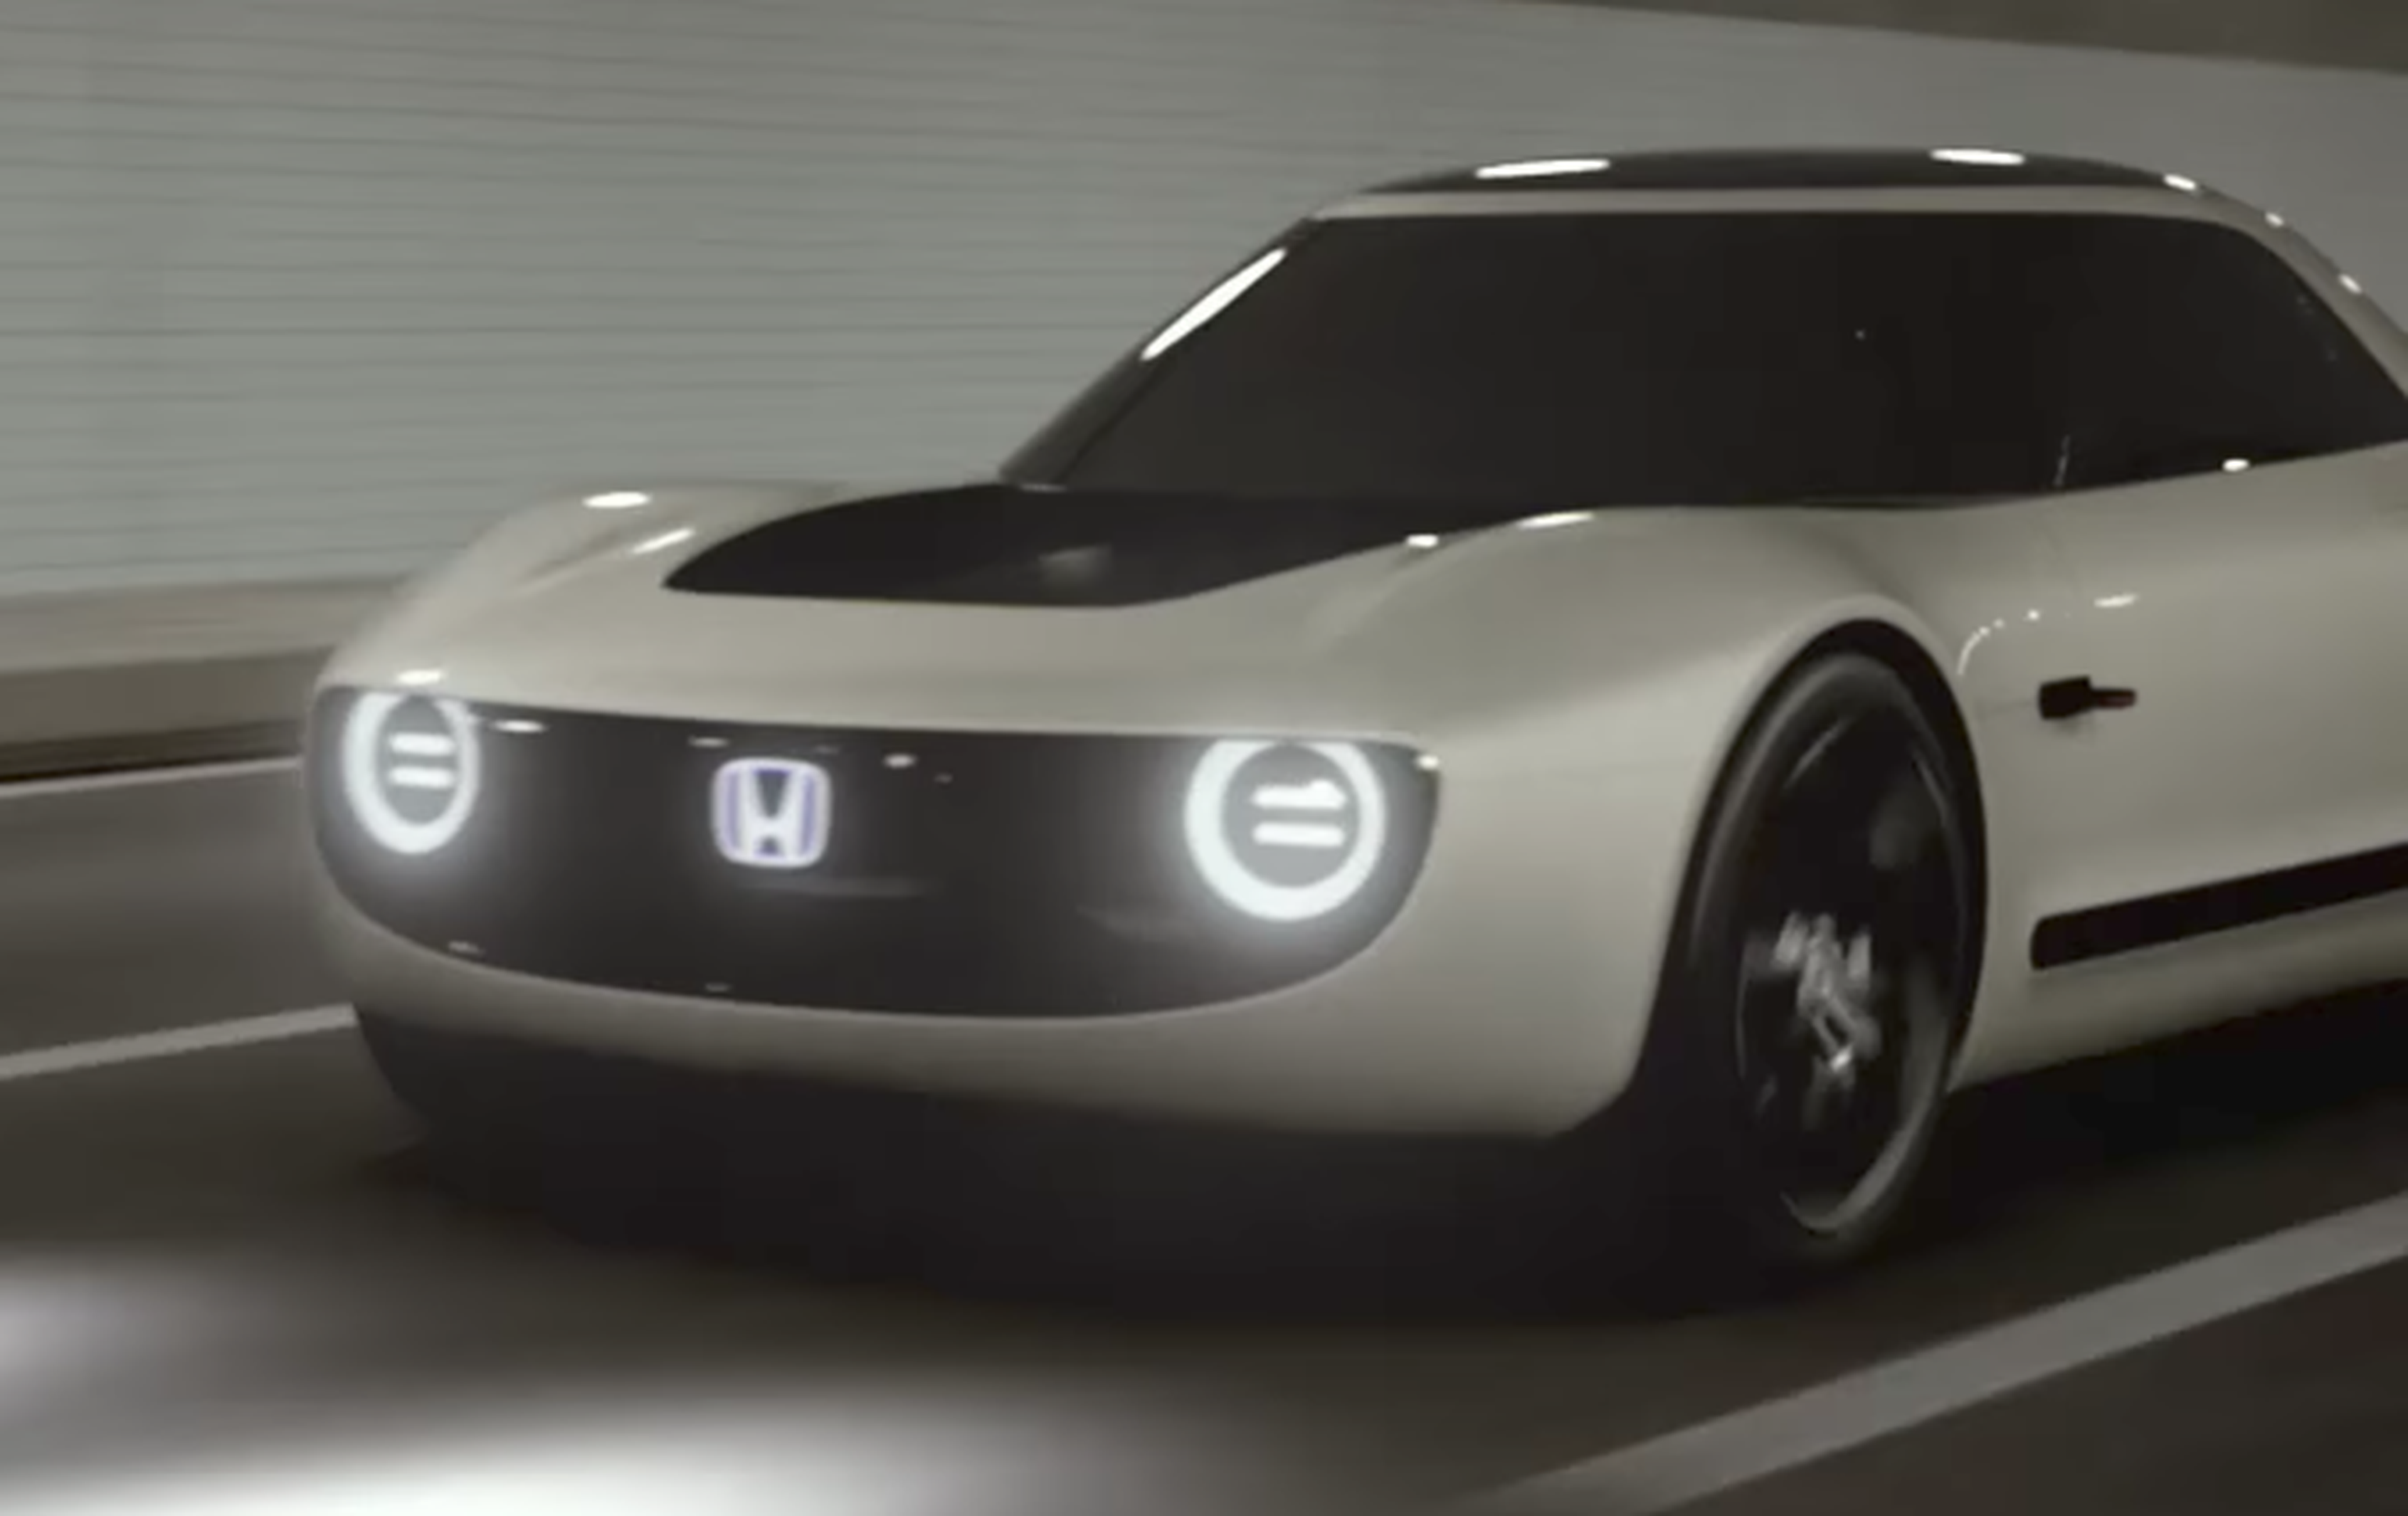 VÍDEO: Honda Sports EV Concept, mira este biplaza retro y ¡eléctrico!